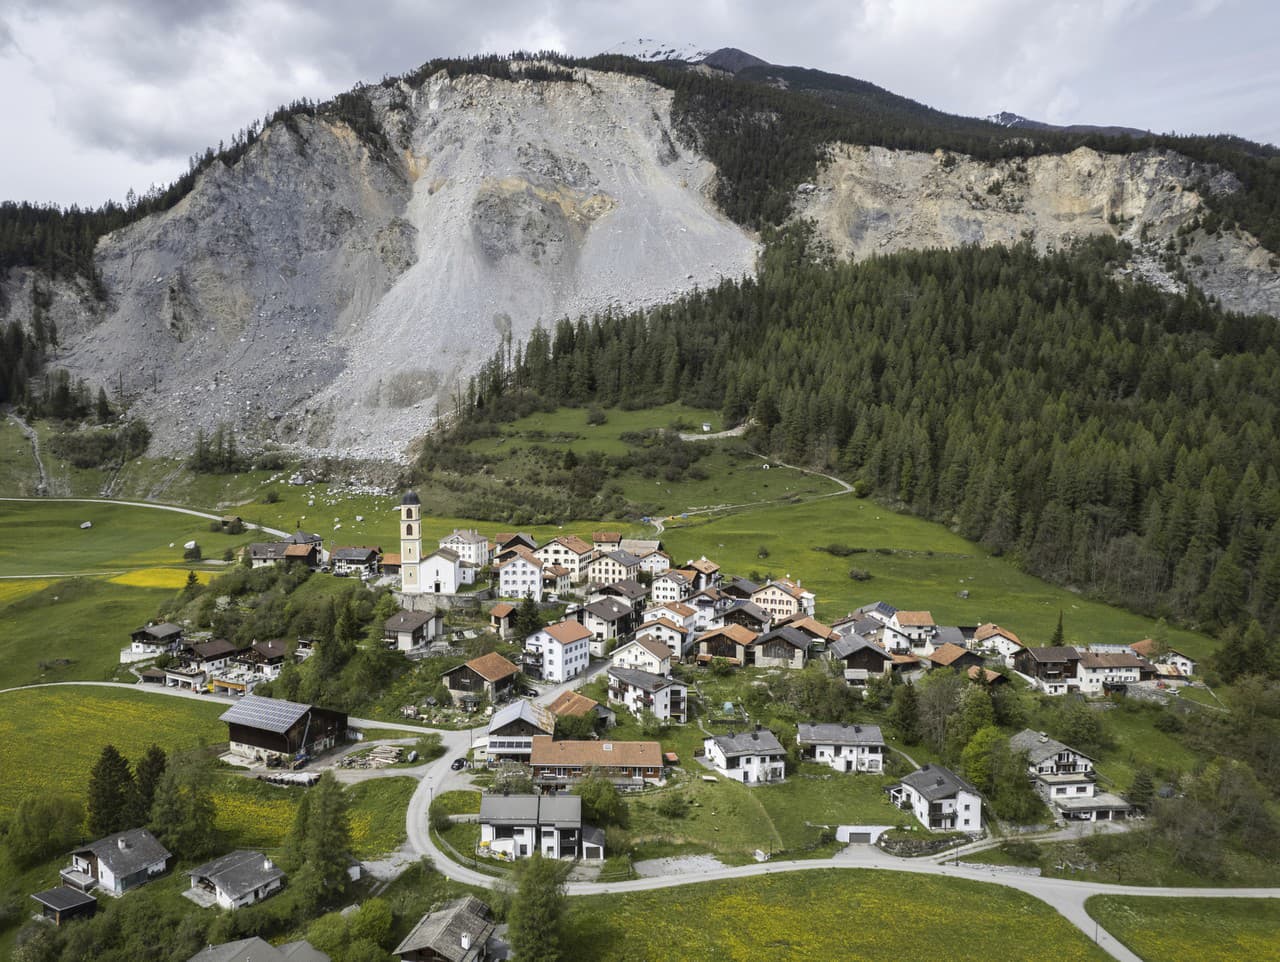 Predstavitelia švajčiarskej dediny Brienz nariadili obyvateľom obce evakuáciu z dôvodu hroziaceho pádu veľkej skaly z blízkej hory.